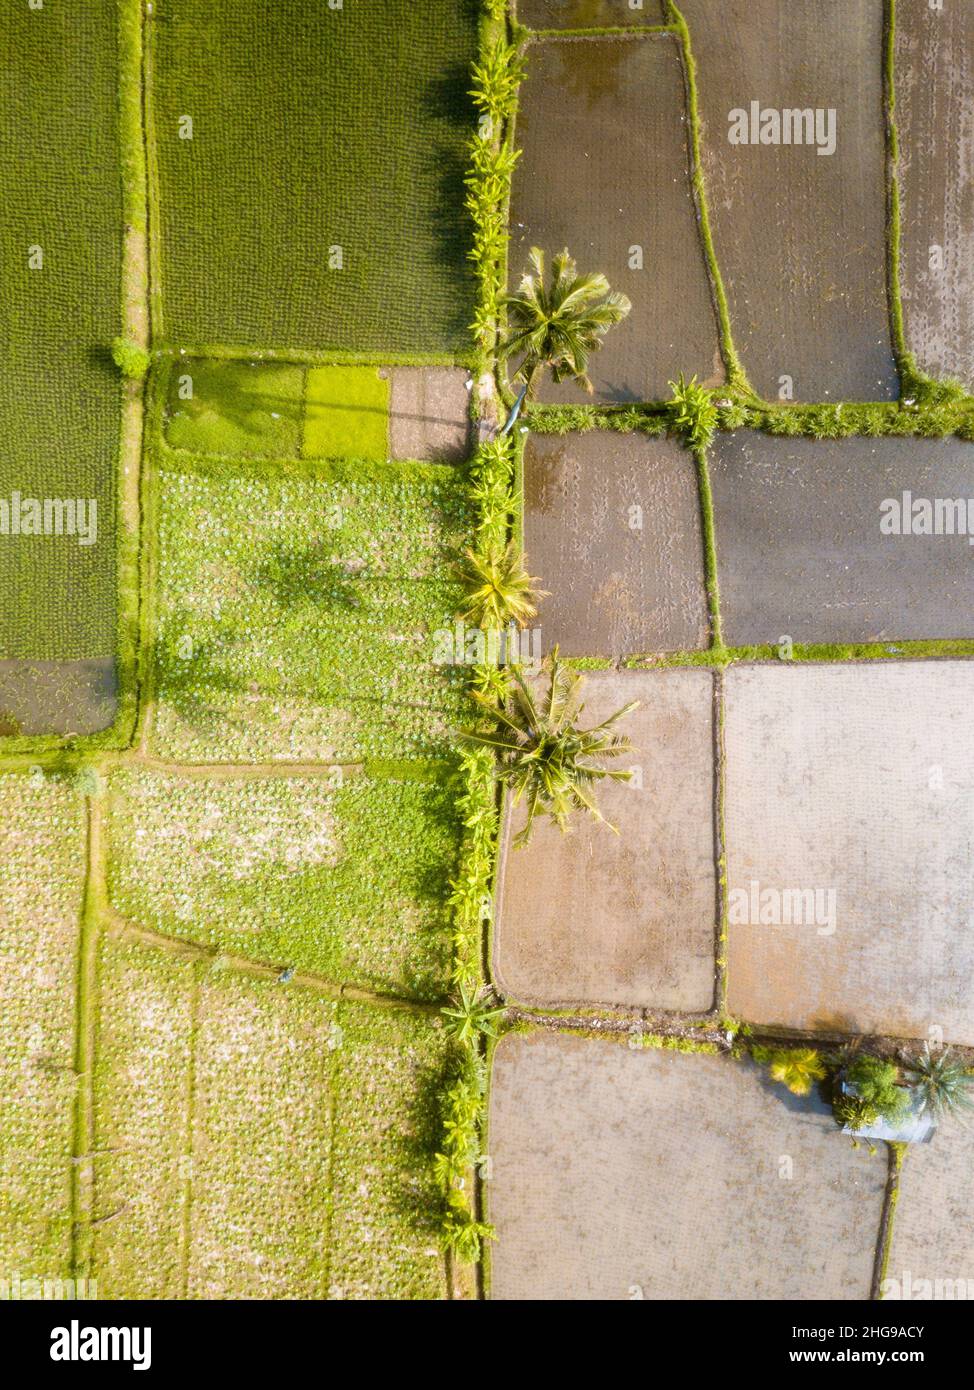 Vue aérienne des rizières bordées de palmiers, Tegalalang, Bali, Indonésie Banque D'Images